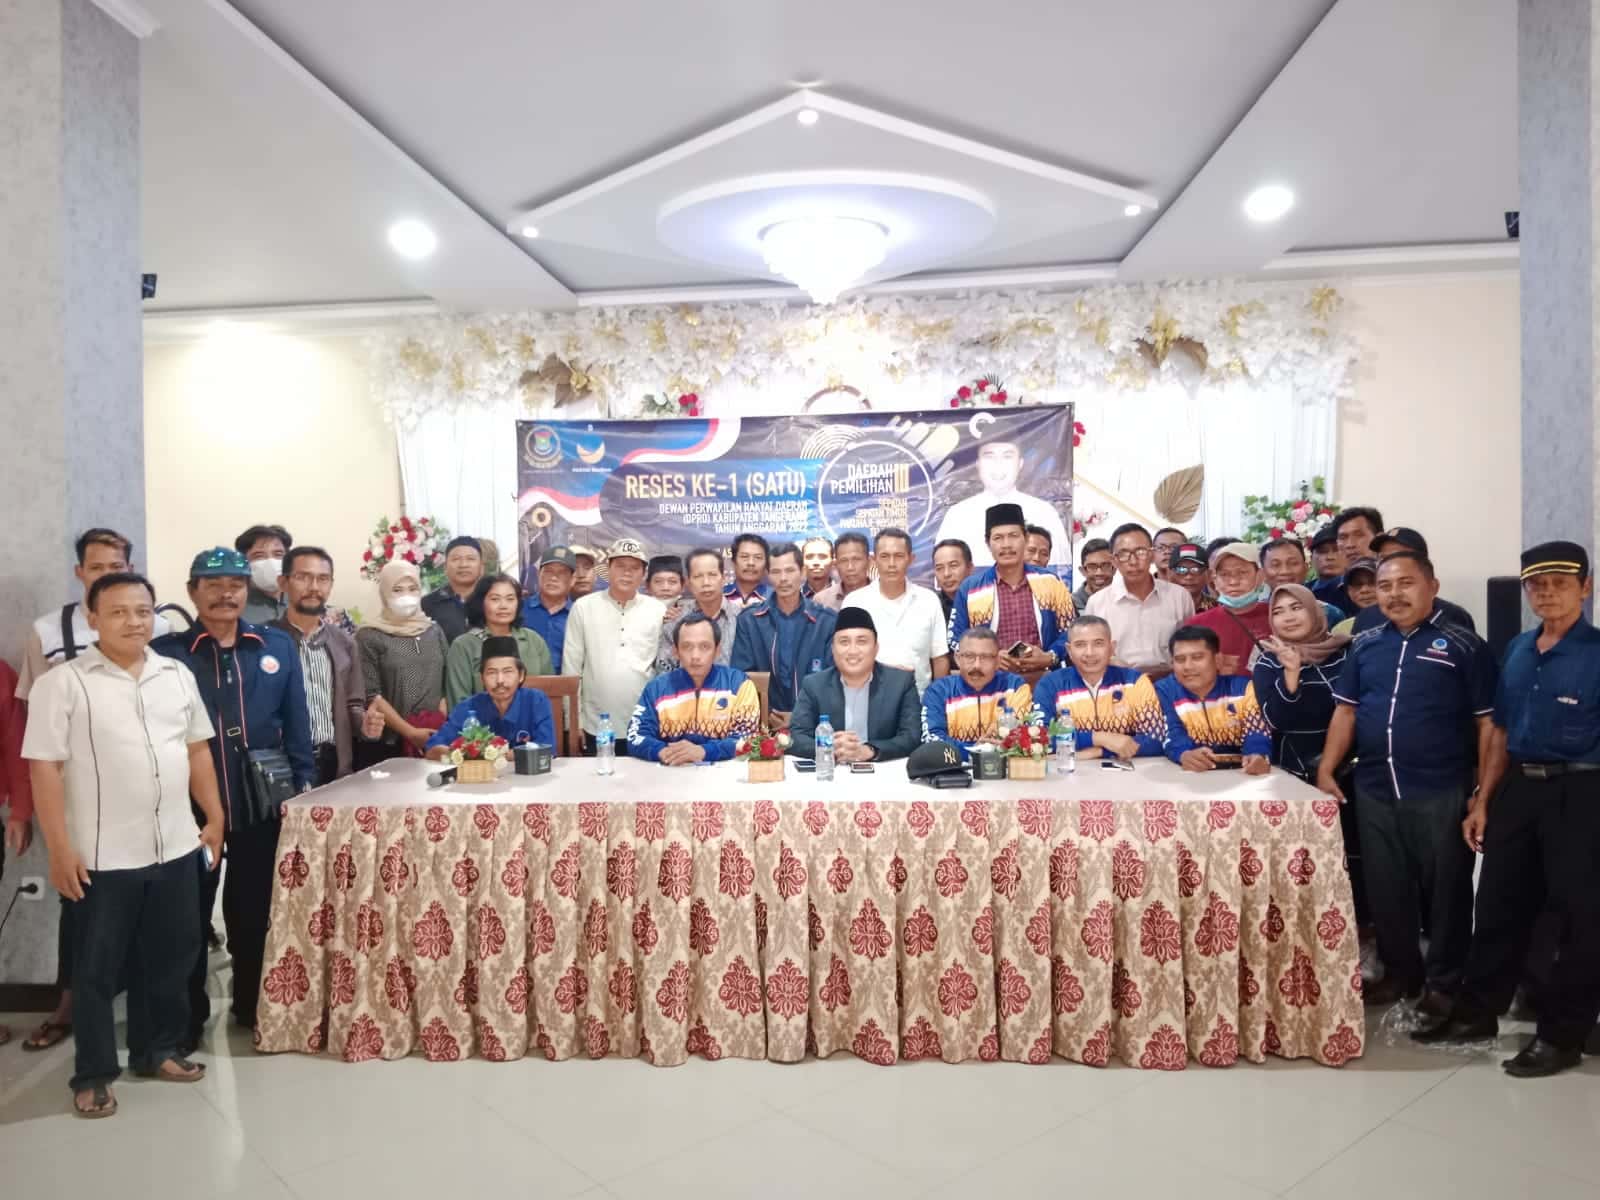 Chris Indra Wijaya anggota DPRD Kabupaten Tangerang saat bersama warga di kegiatan reses.